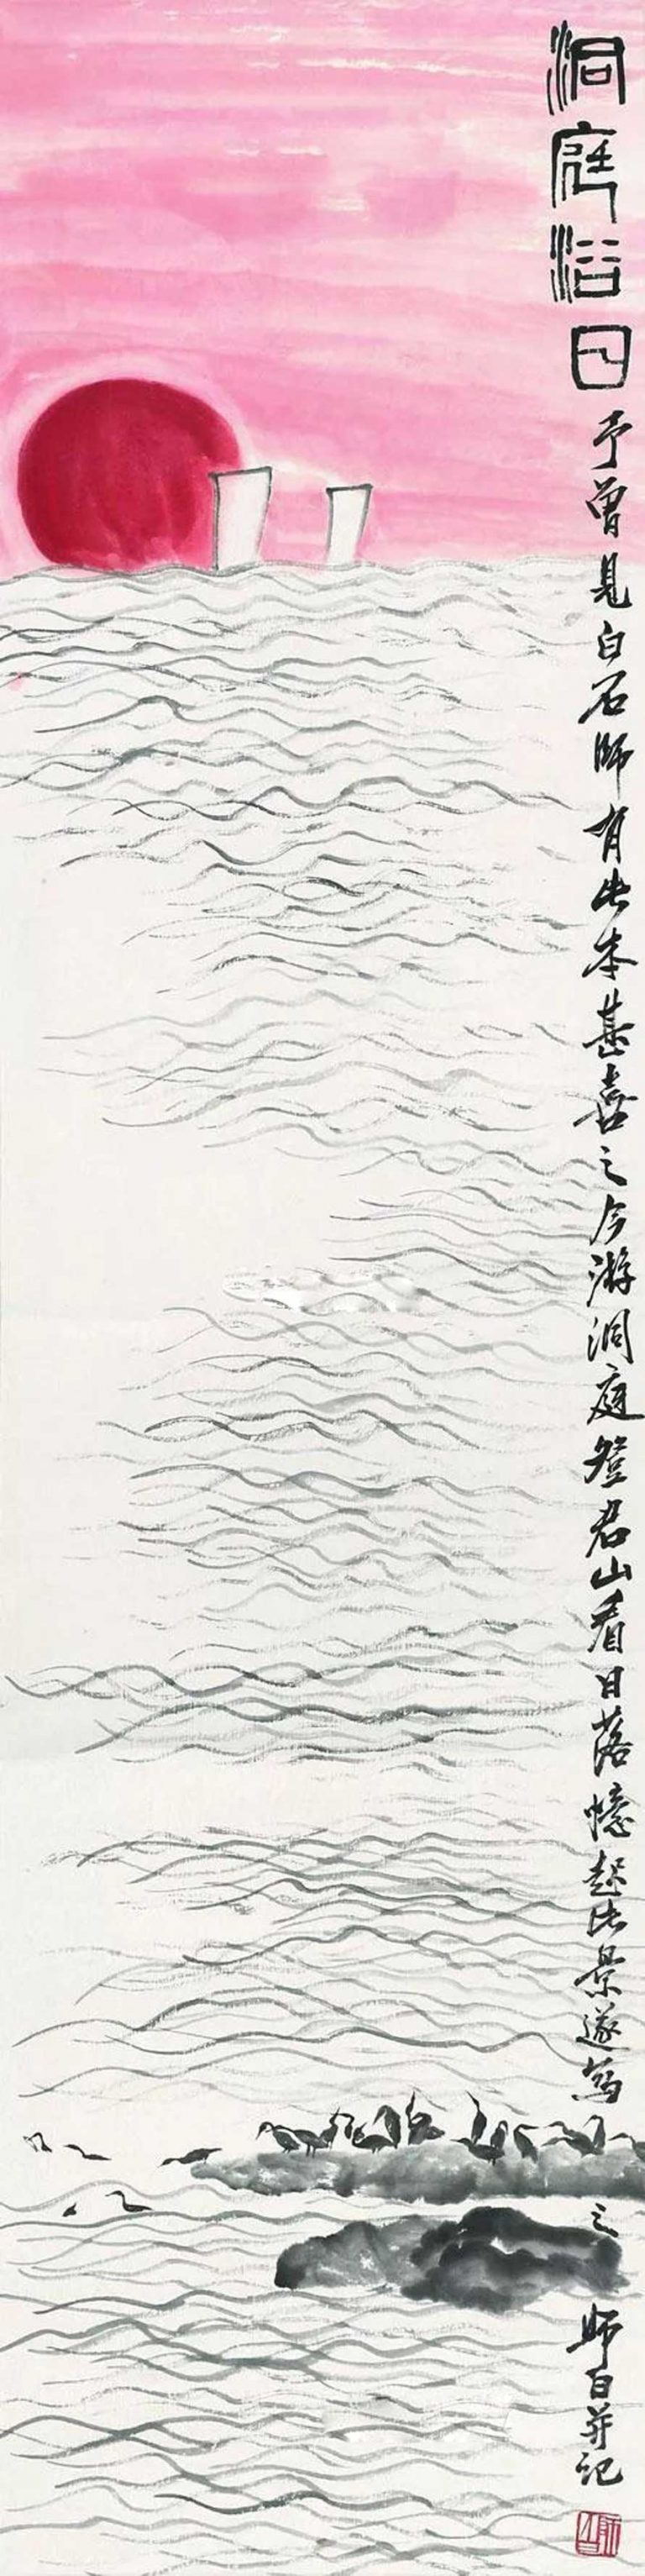 娄师白山水画作品欣赏(图21)